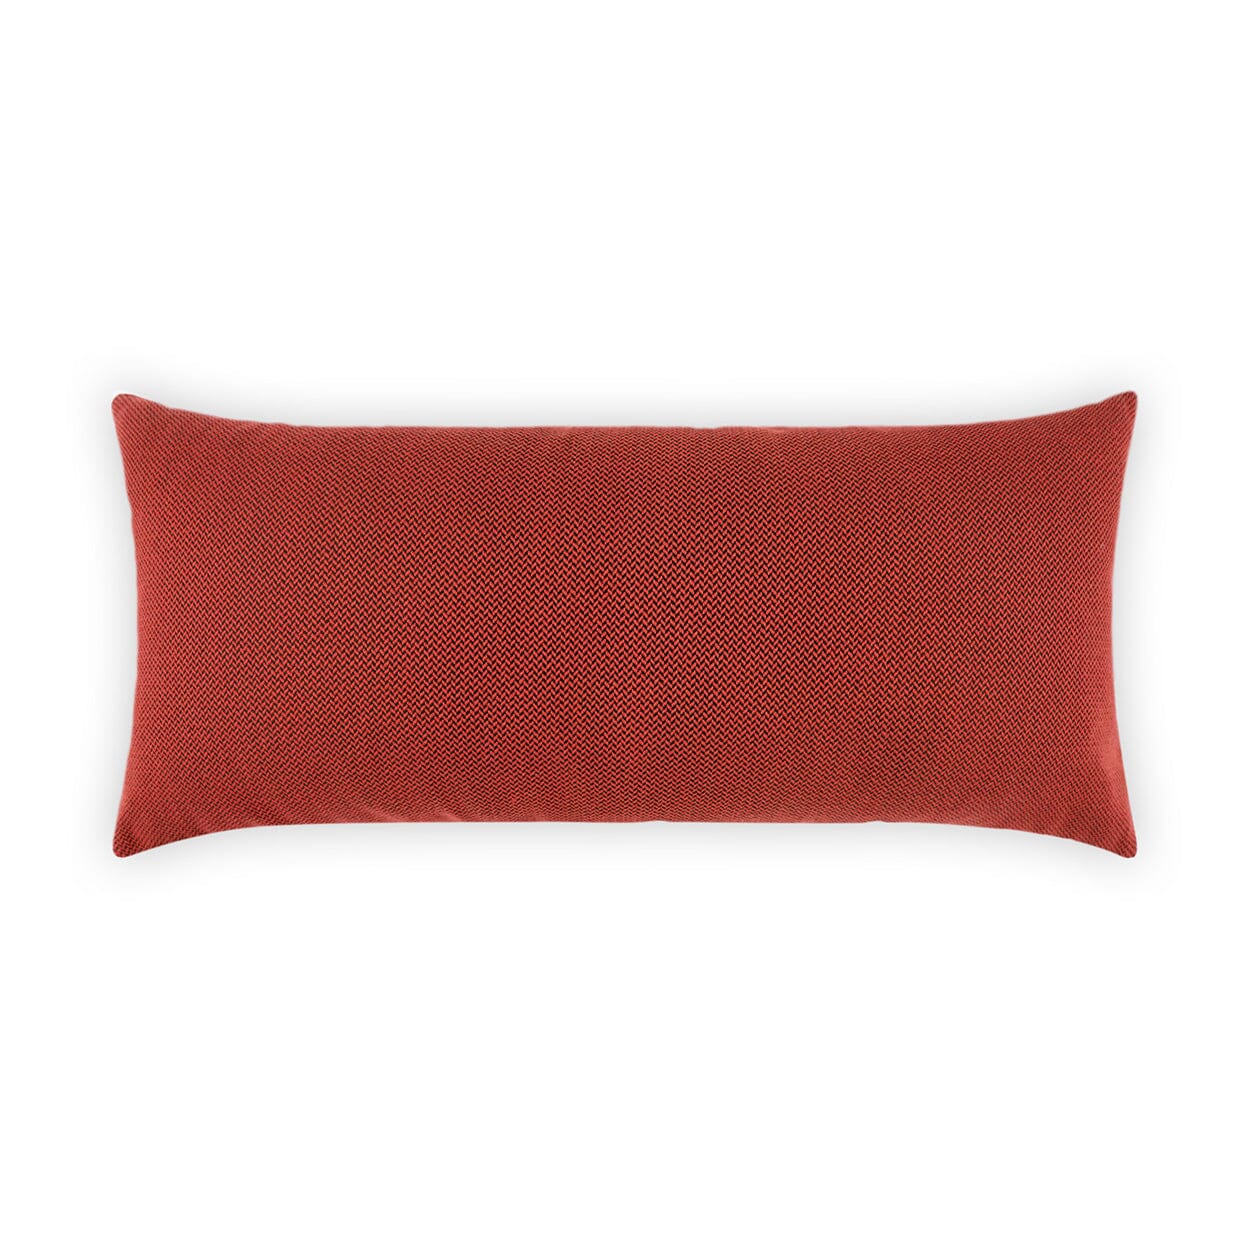 D.V. Kap 12" x 24" Outdoor Lumbar Pillow | Pyke Red Lumbar Pillows D.V Kap Outdoor